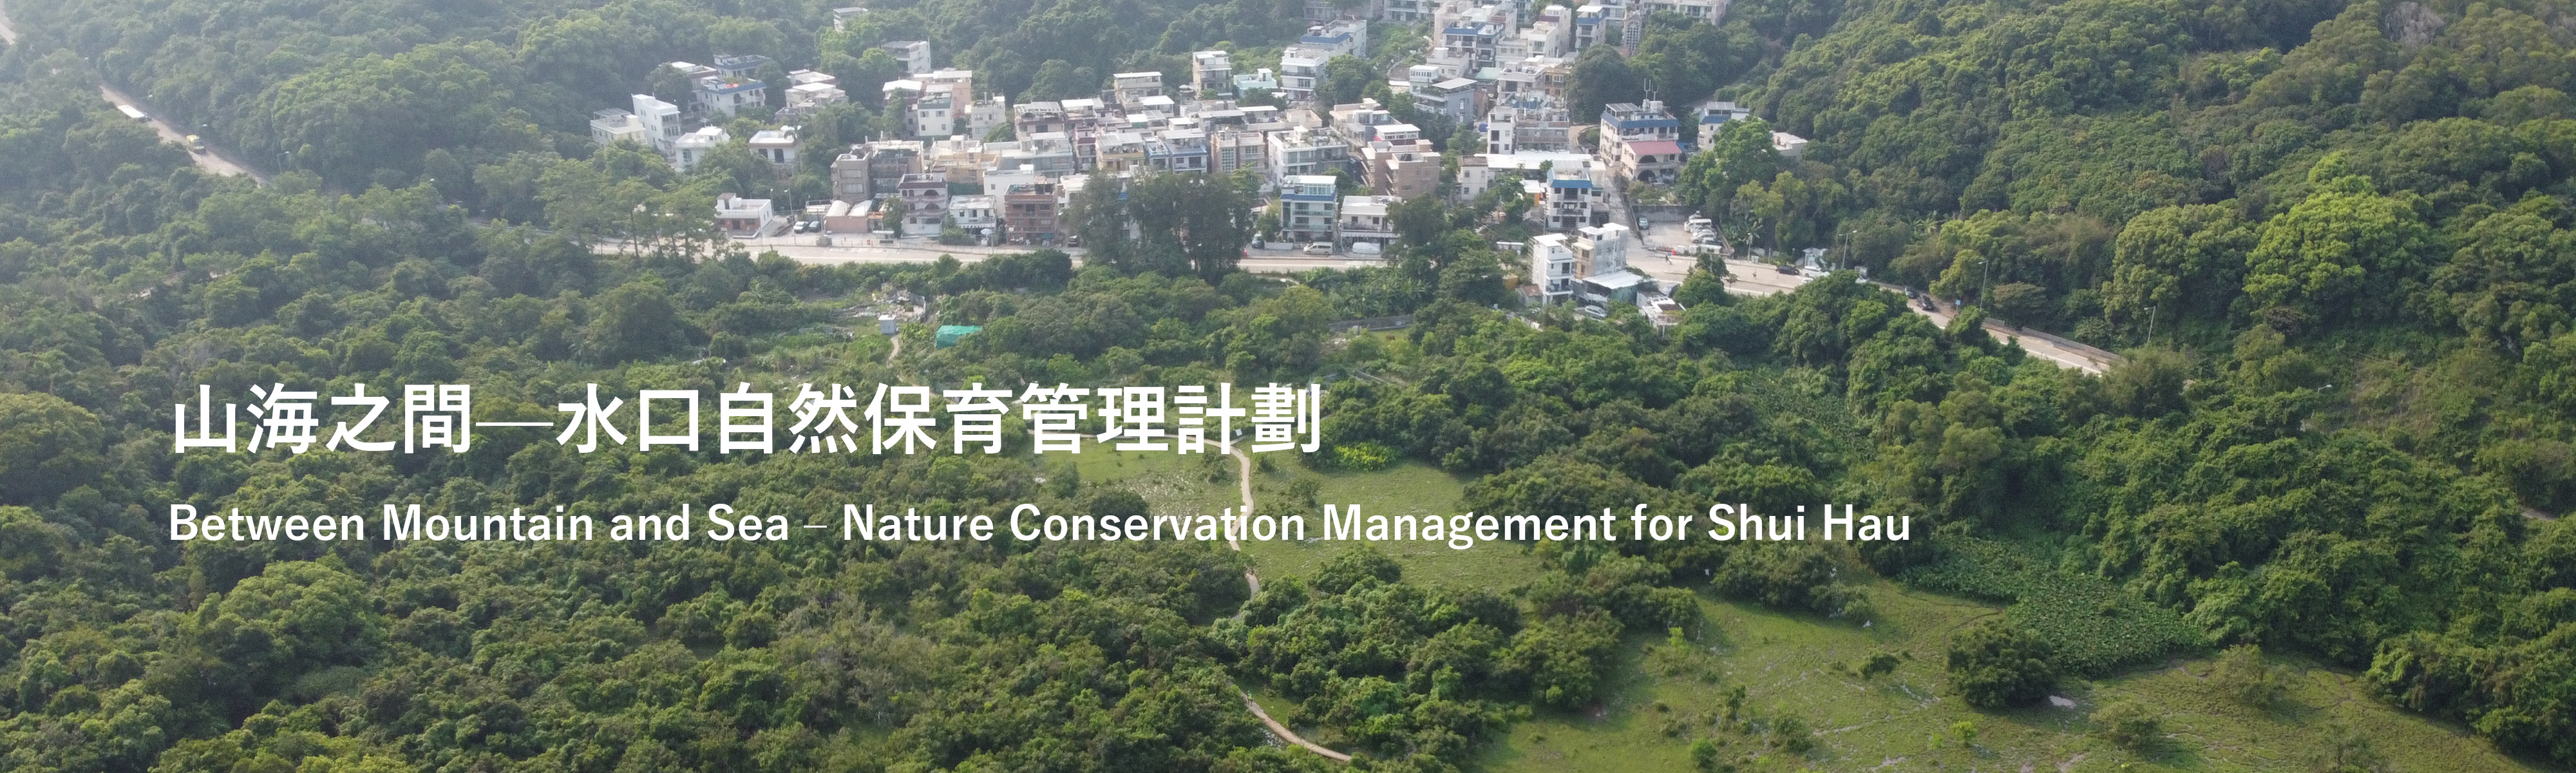 Nature Conservation Management for Shui Hau